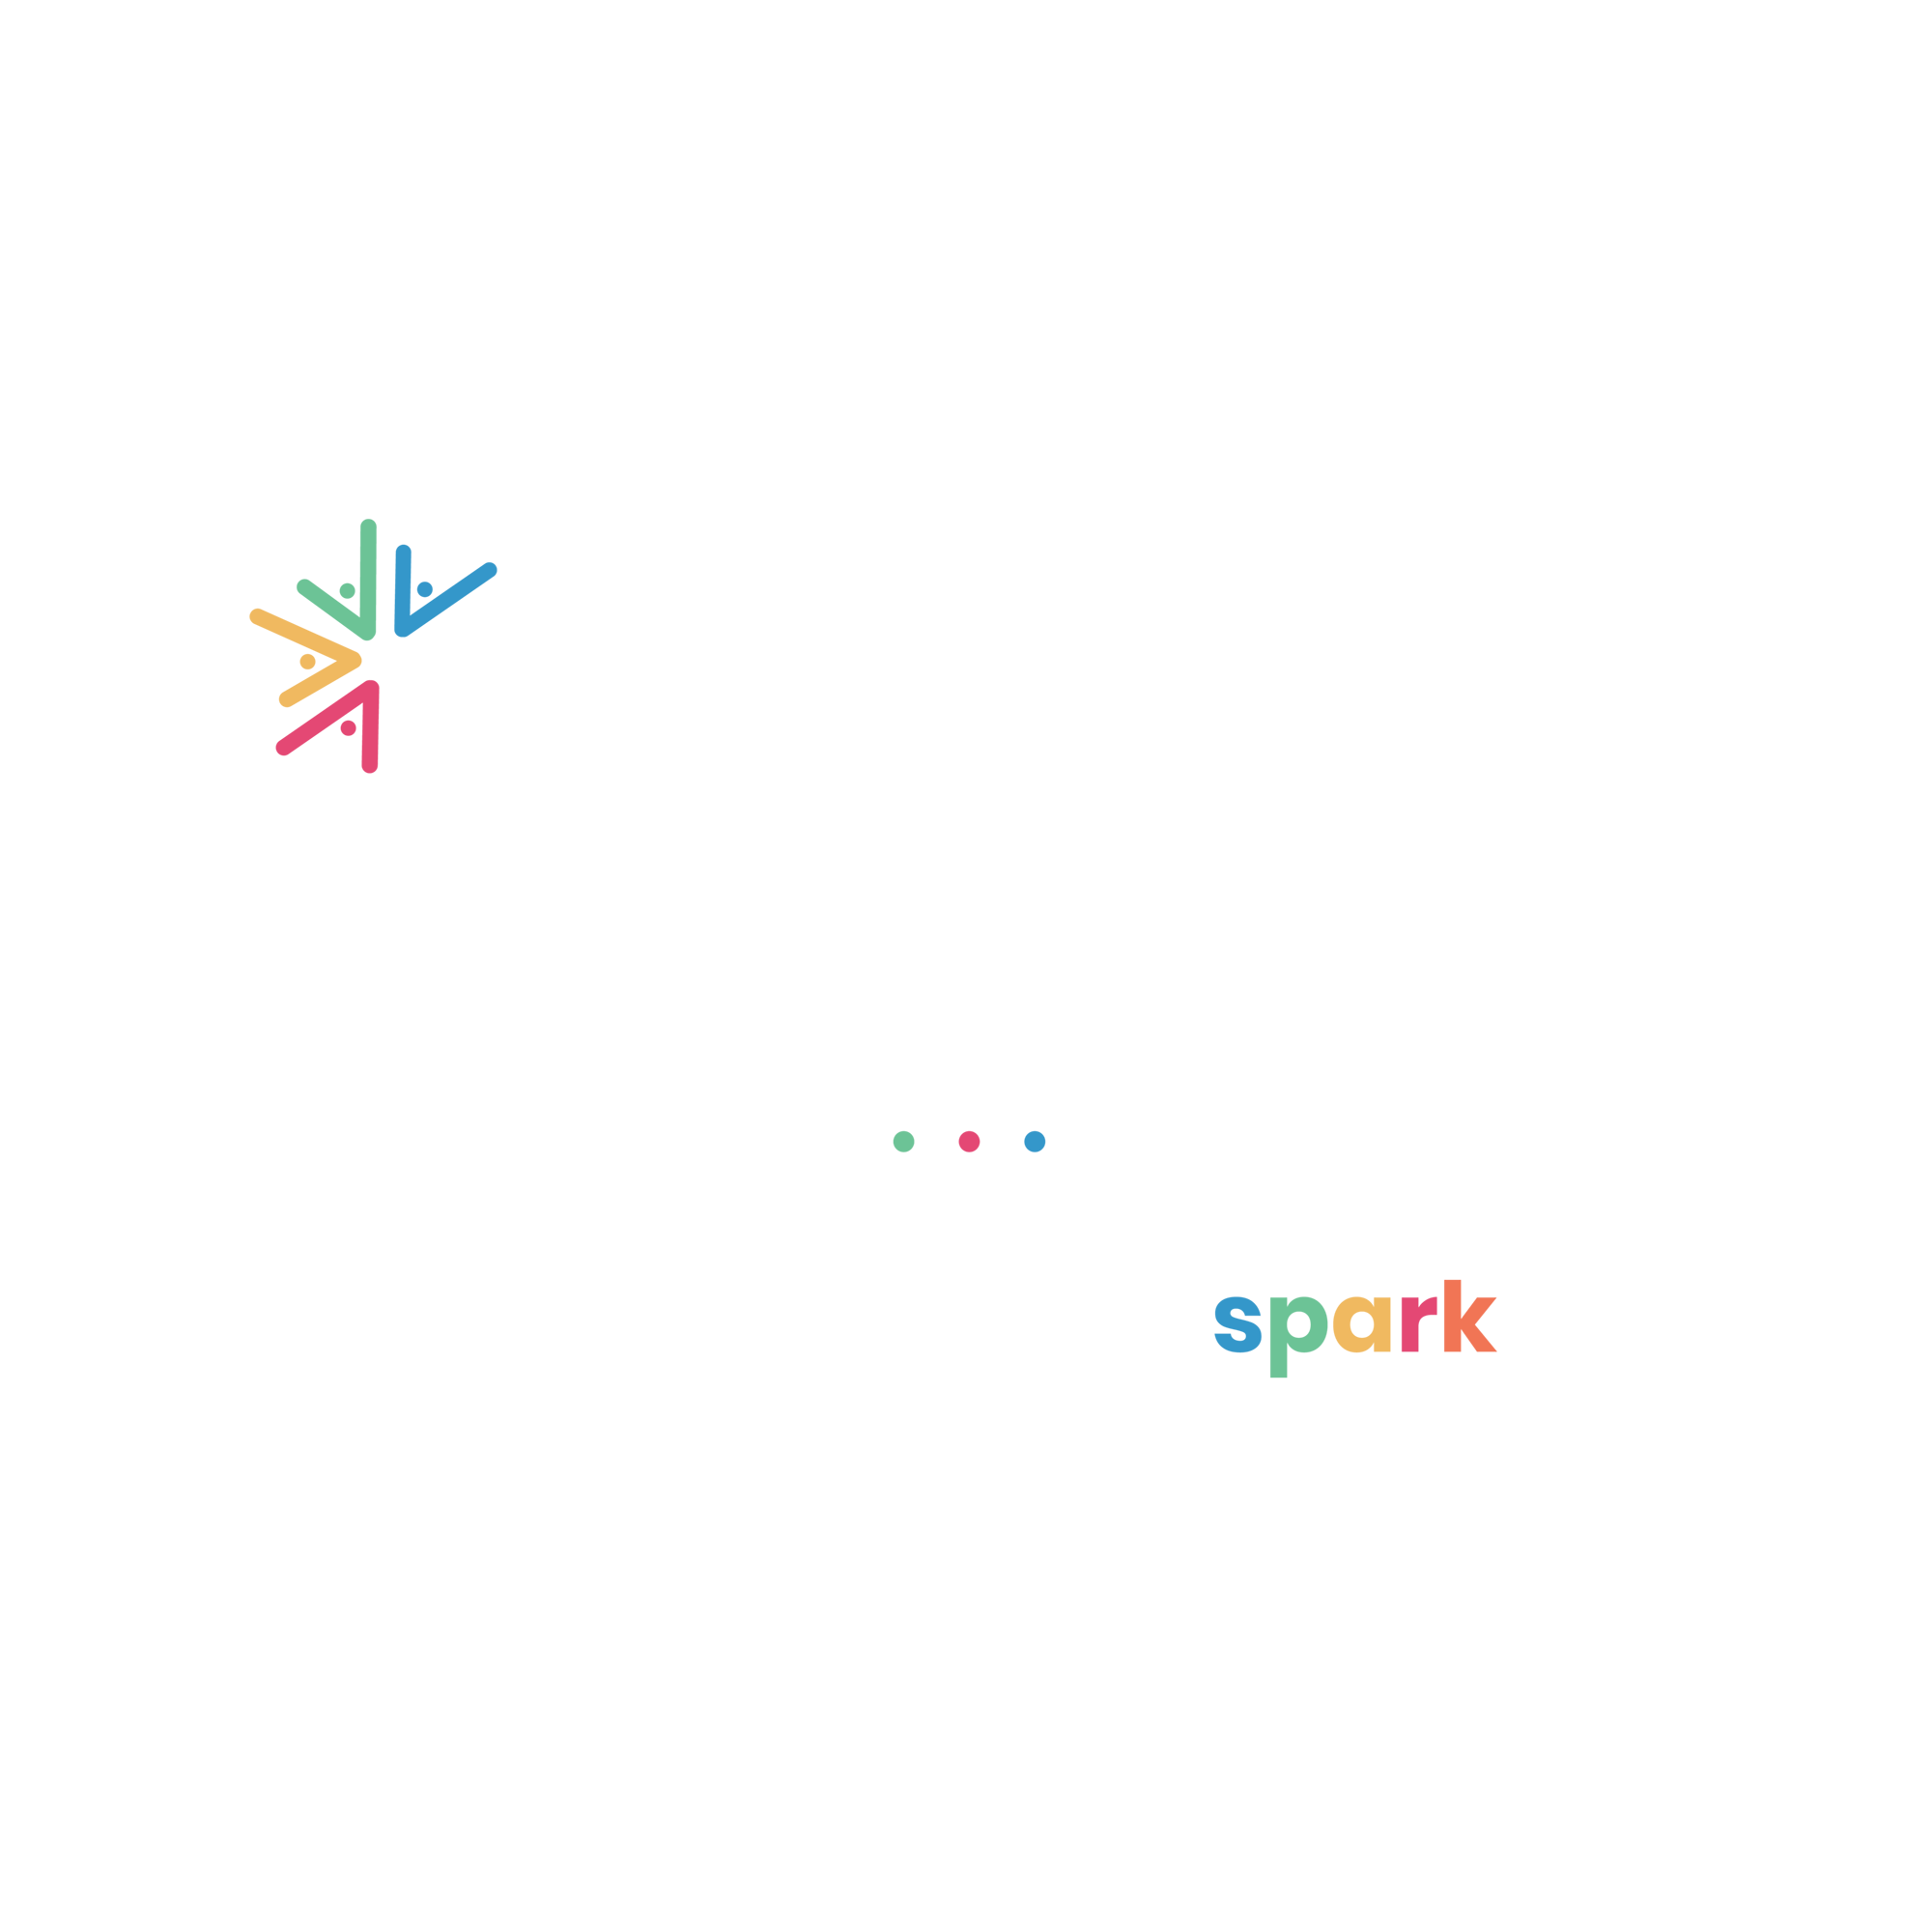 Montessori Regional Charter School - The idea